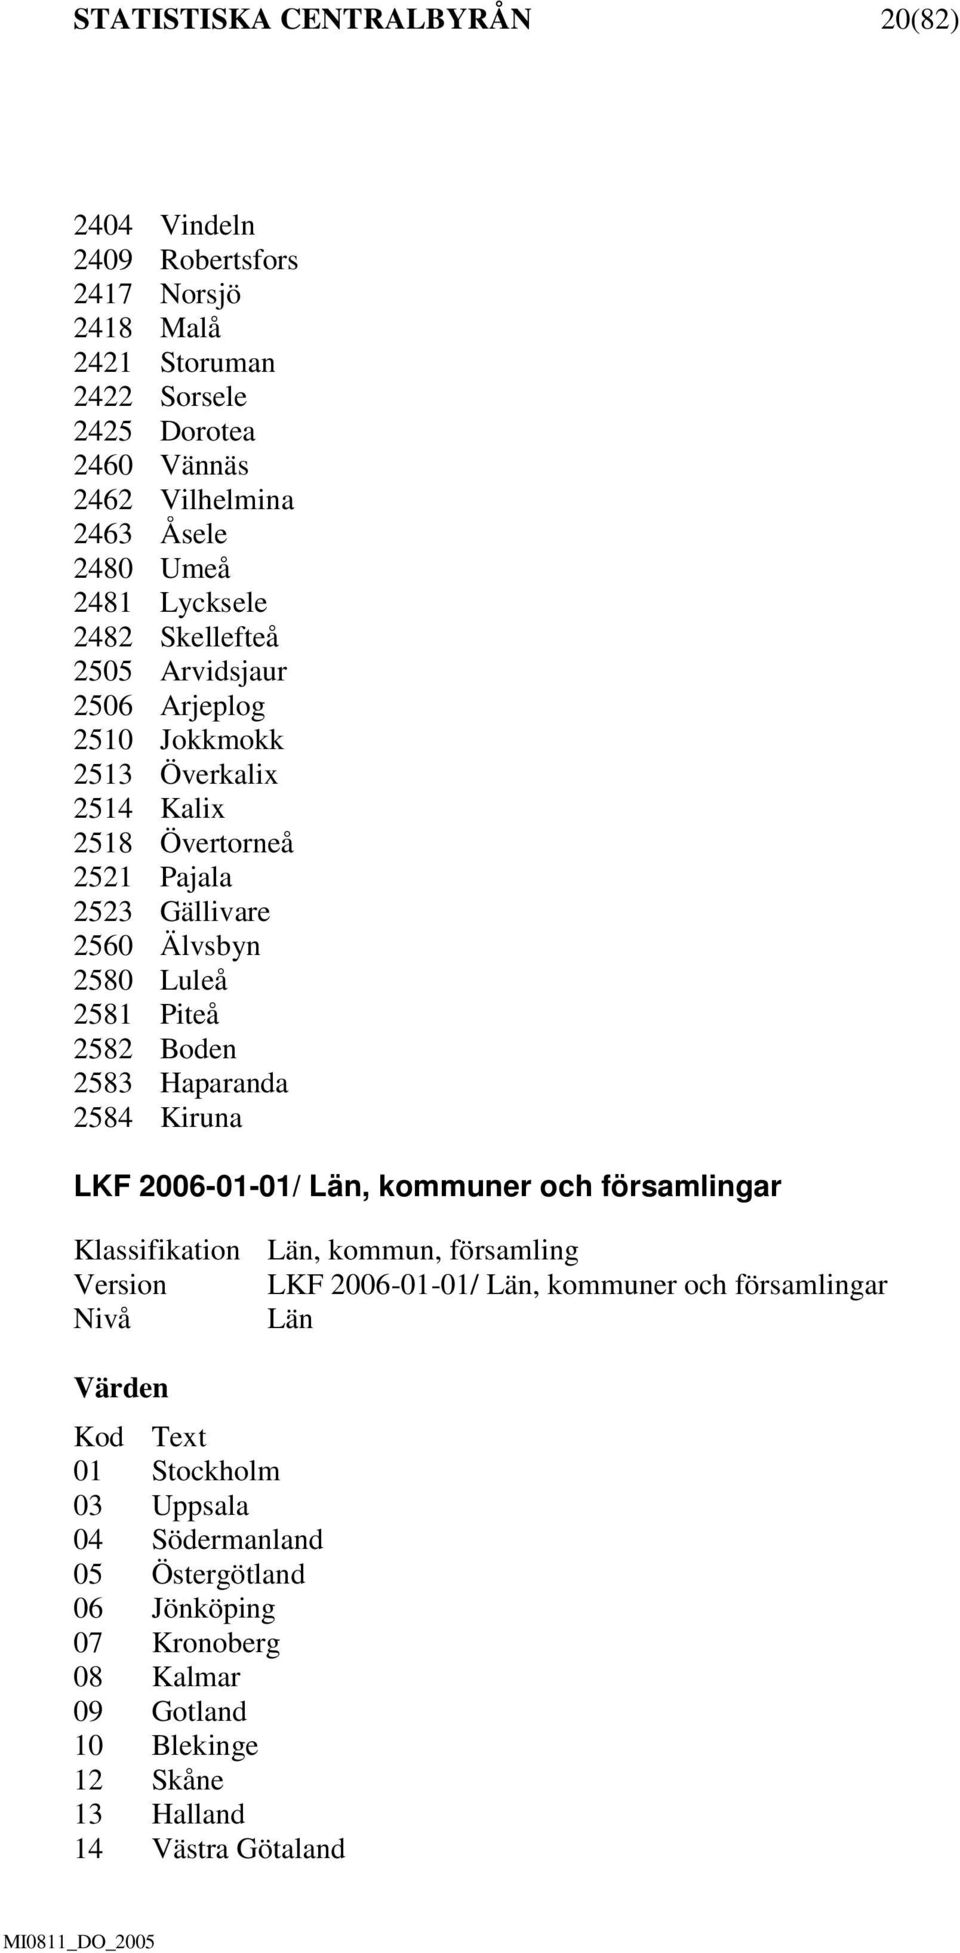 Piteå 2582 Boden 2583 Haparanda 2584 Kiruna LKF 2006-01-01/ Län, kommuner och församlingar Klassifikation Län, kommun, församling Version LKF 2006-01-01/ Län, kommuner och